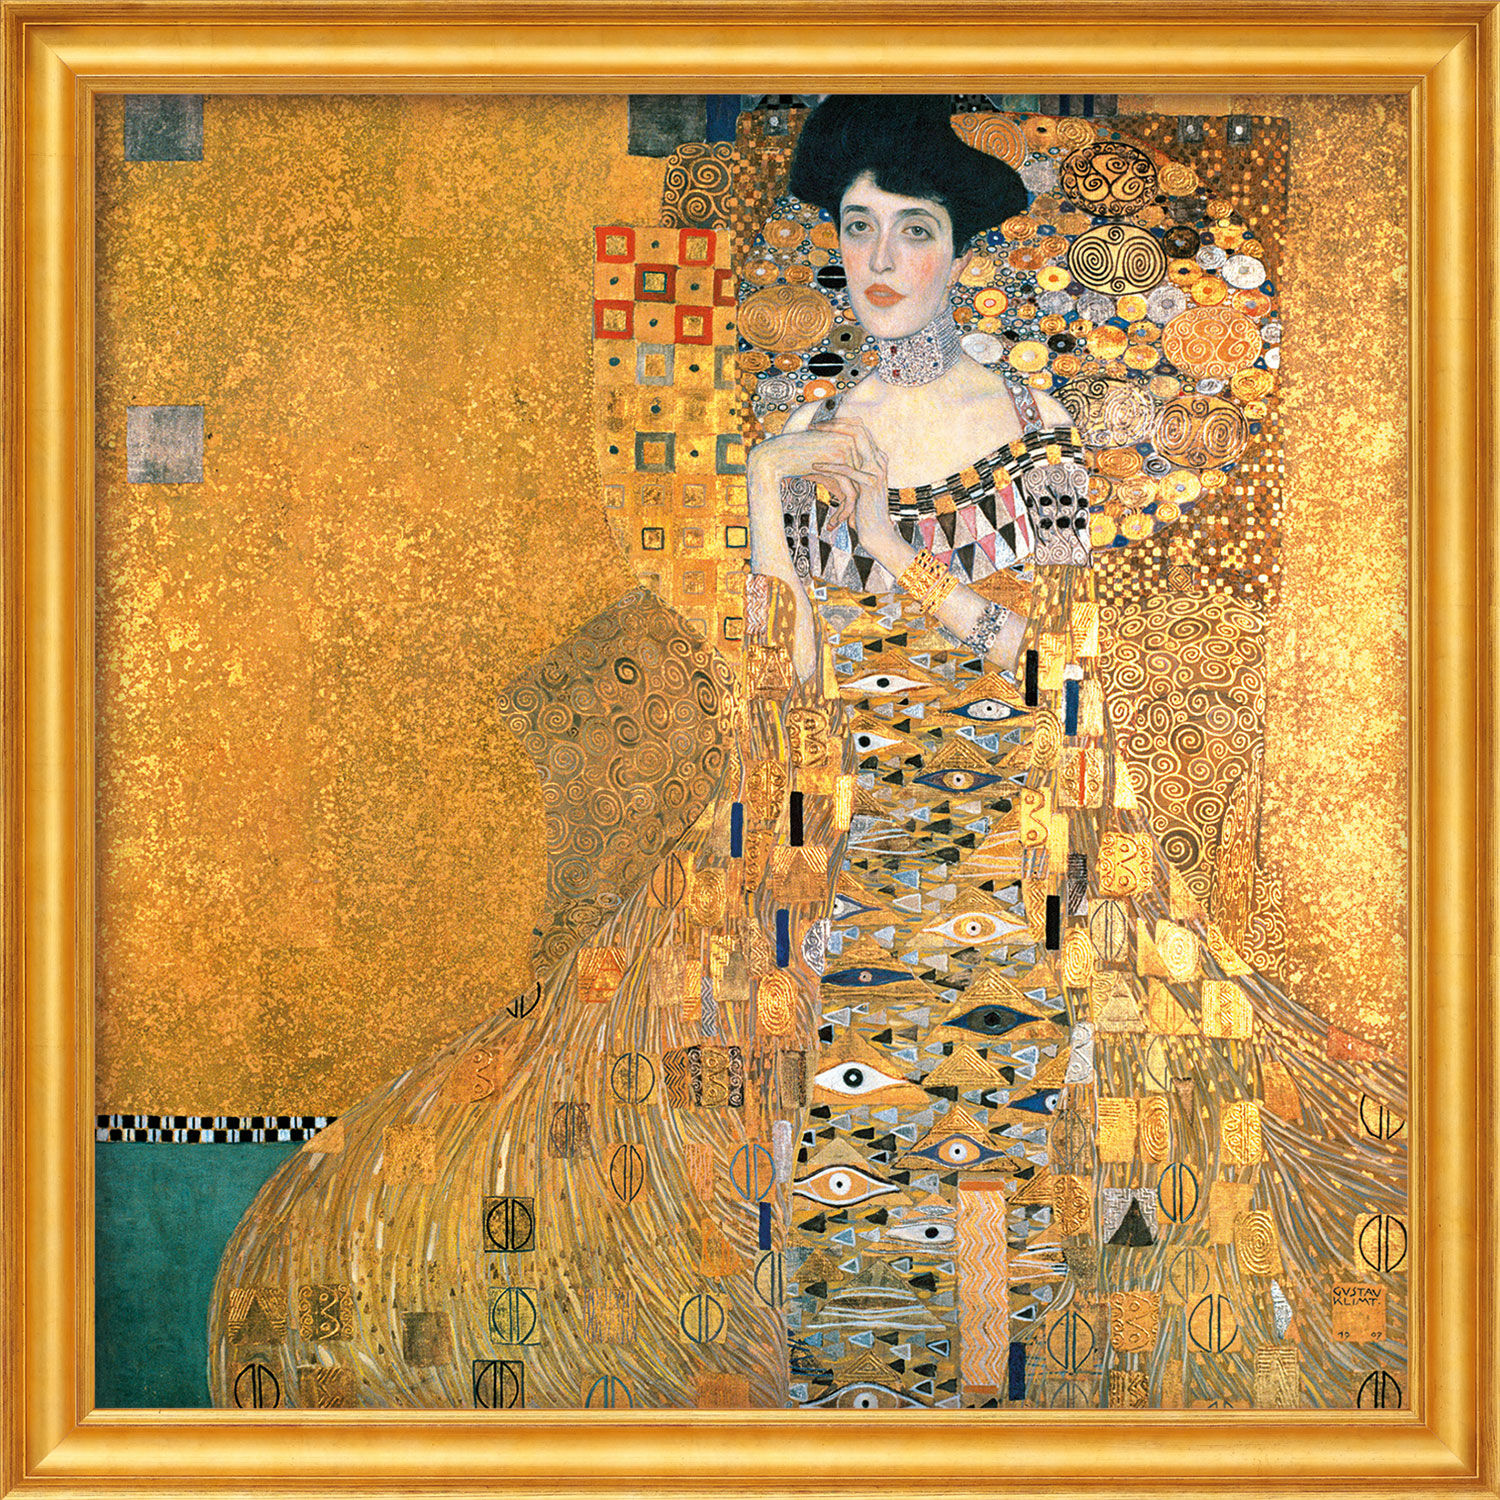 Picture "Adele Bloch-Bauer I" (1907), framed by Gustav Klimt